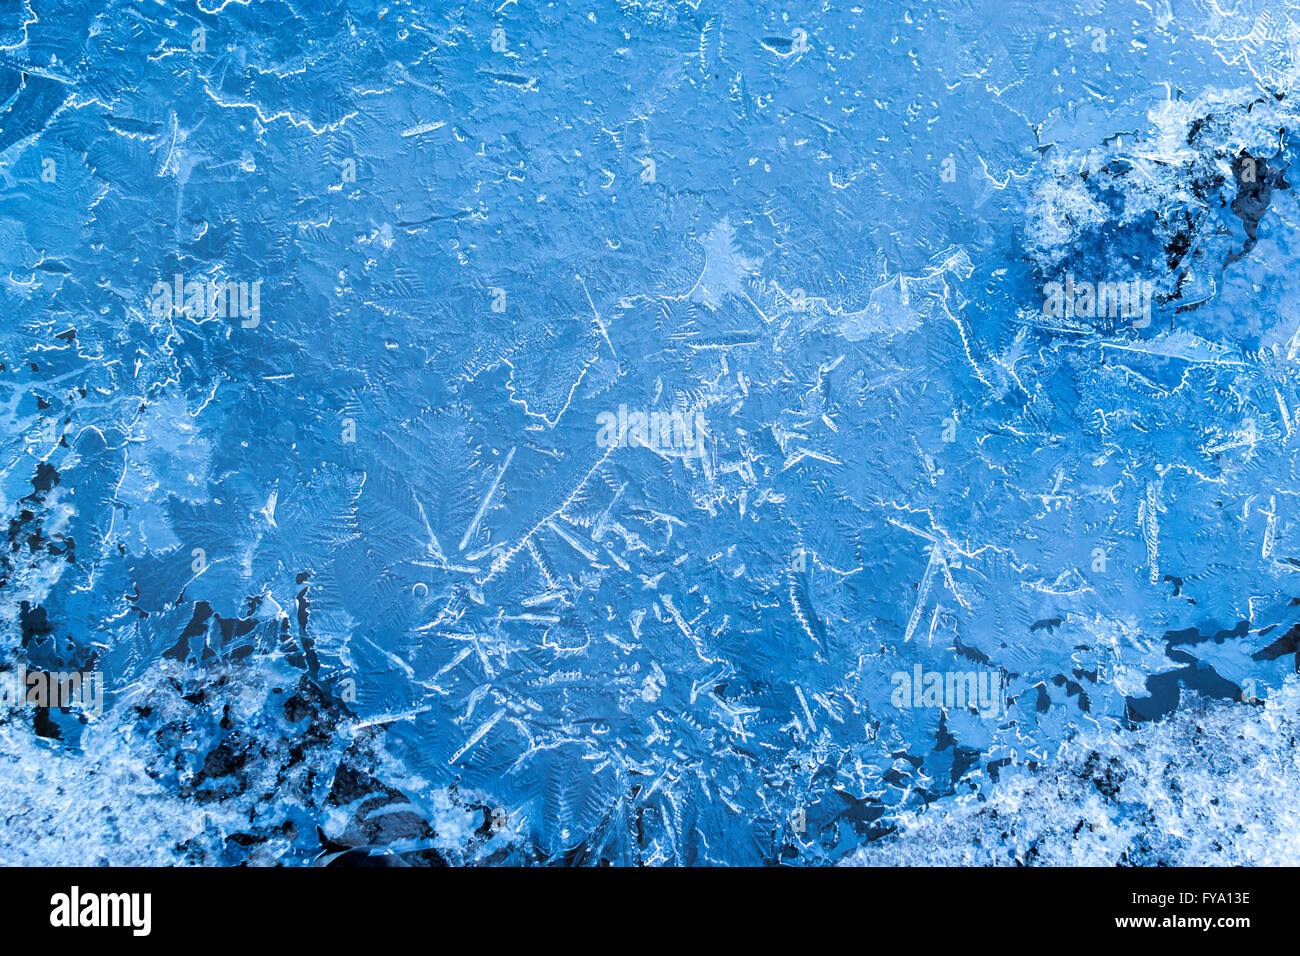 La texture de la glace bleue de l'eau gelée dans une flaque d'eau gelée avec les modèles et formes. Cristal Banque D'Images